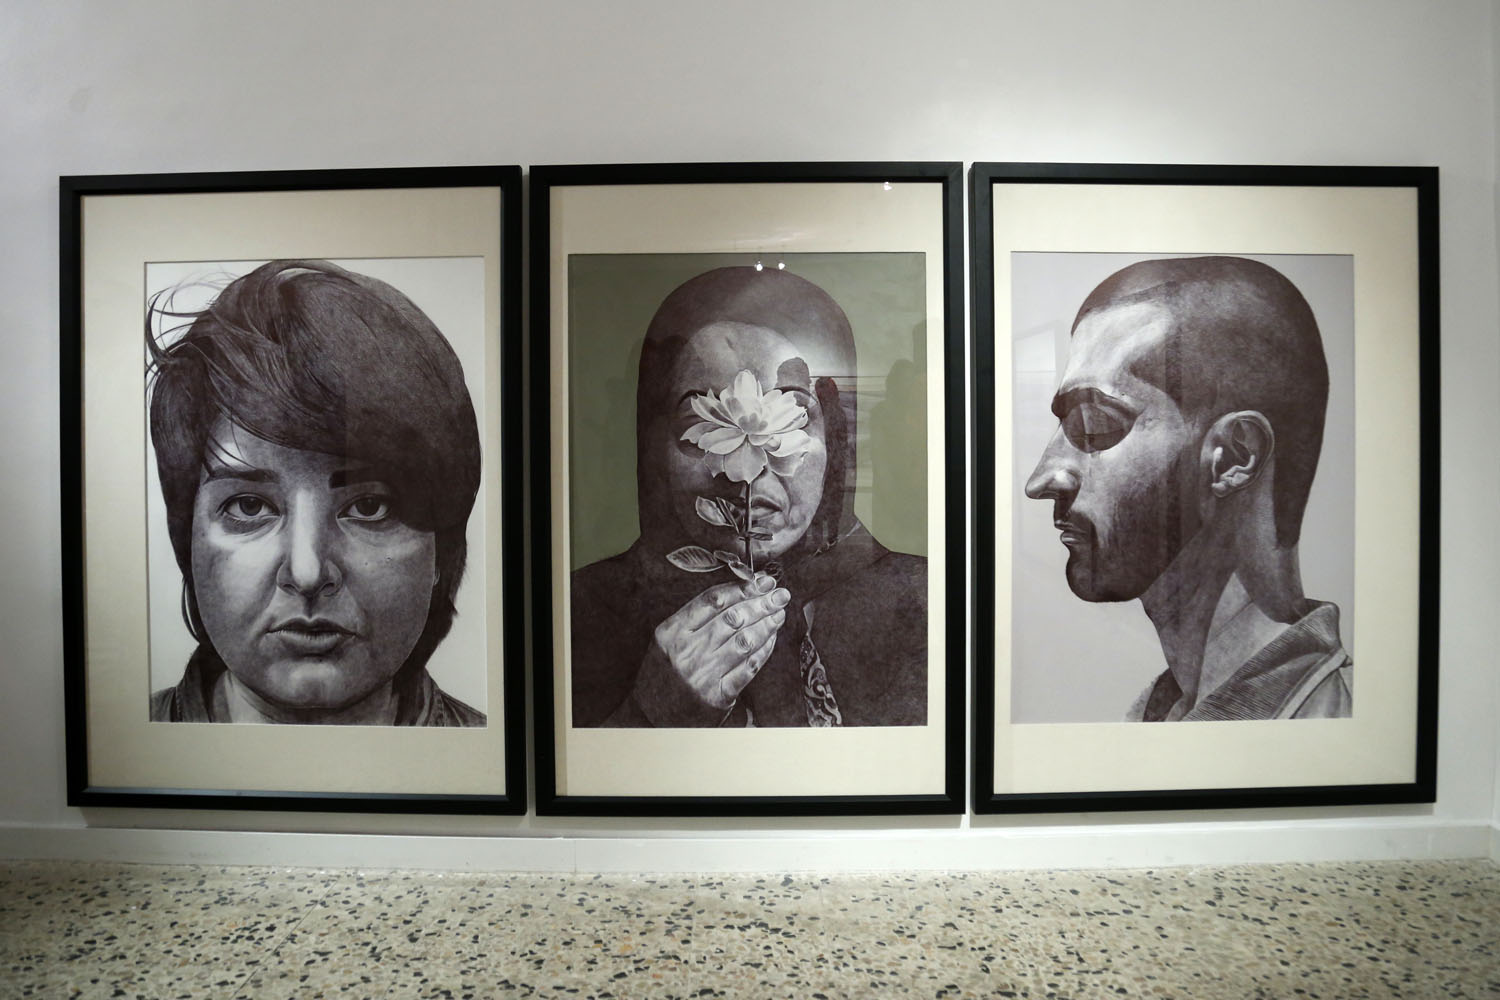  نمایشگاه طراحی و نقاشی های احمد مرشدلو در گالری هما